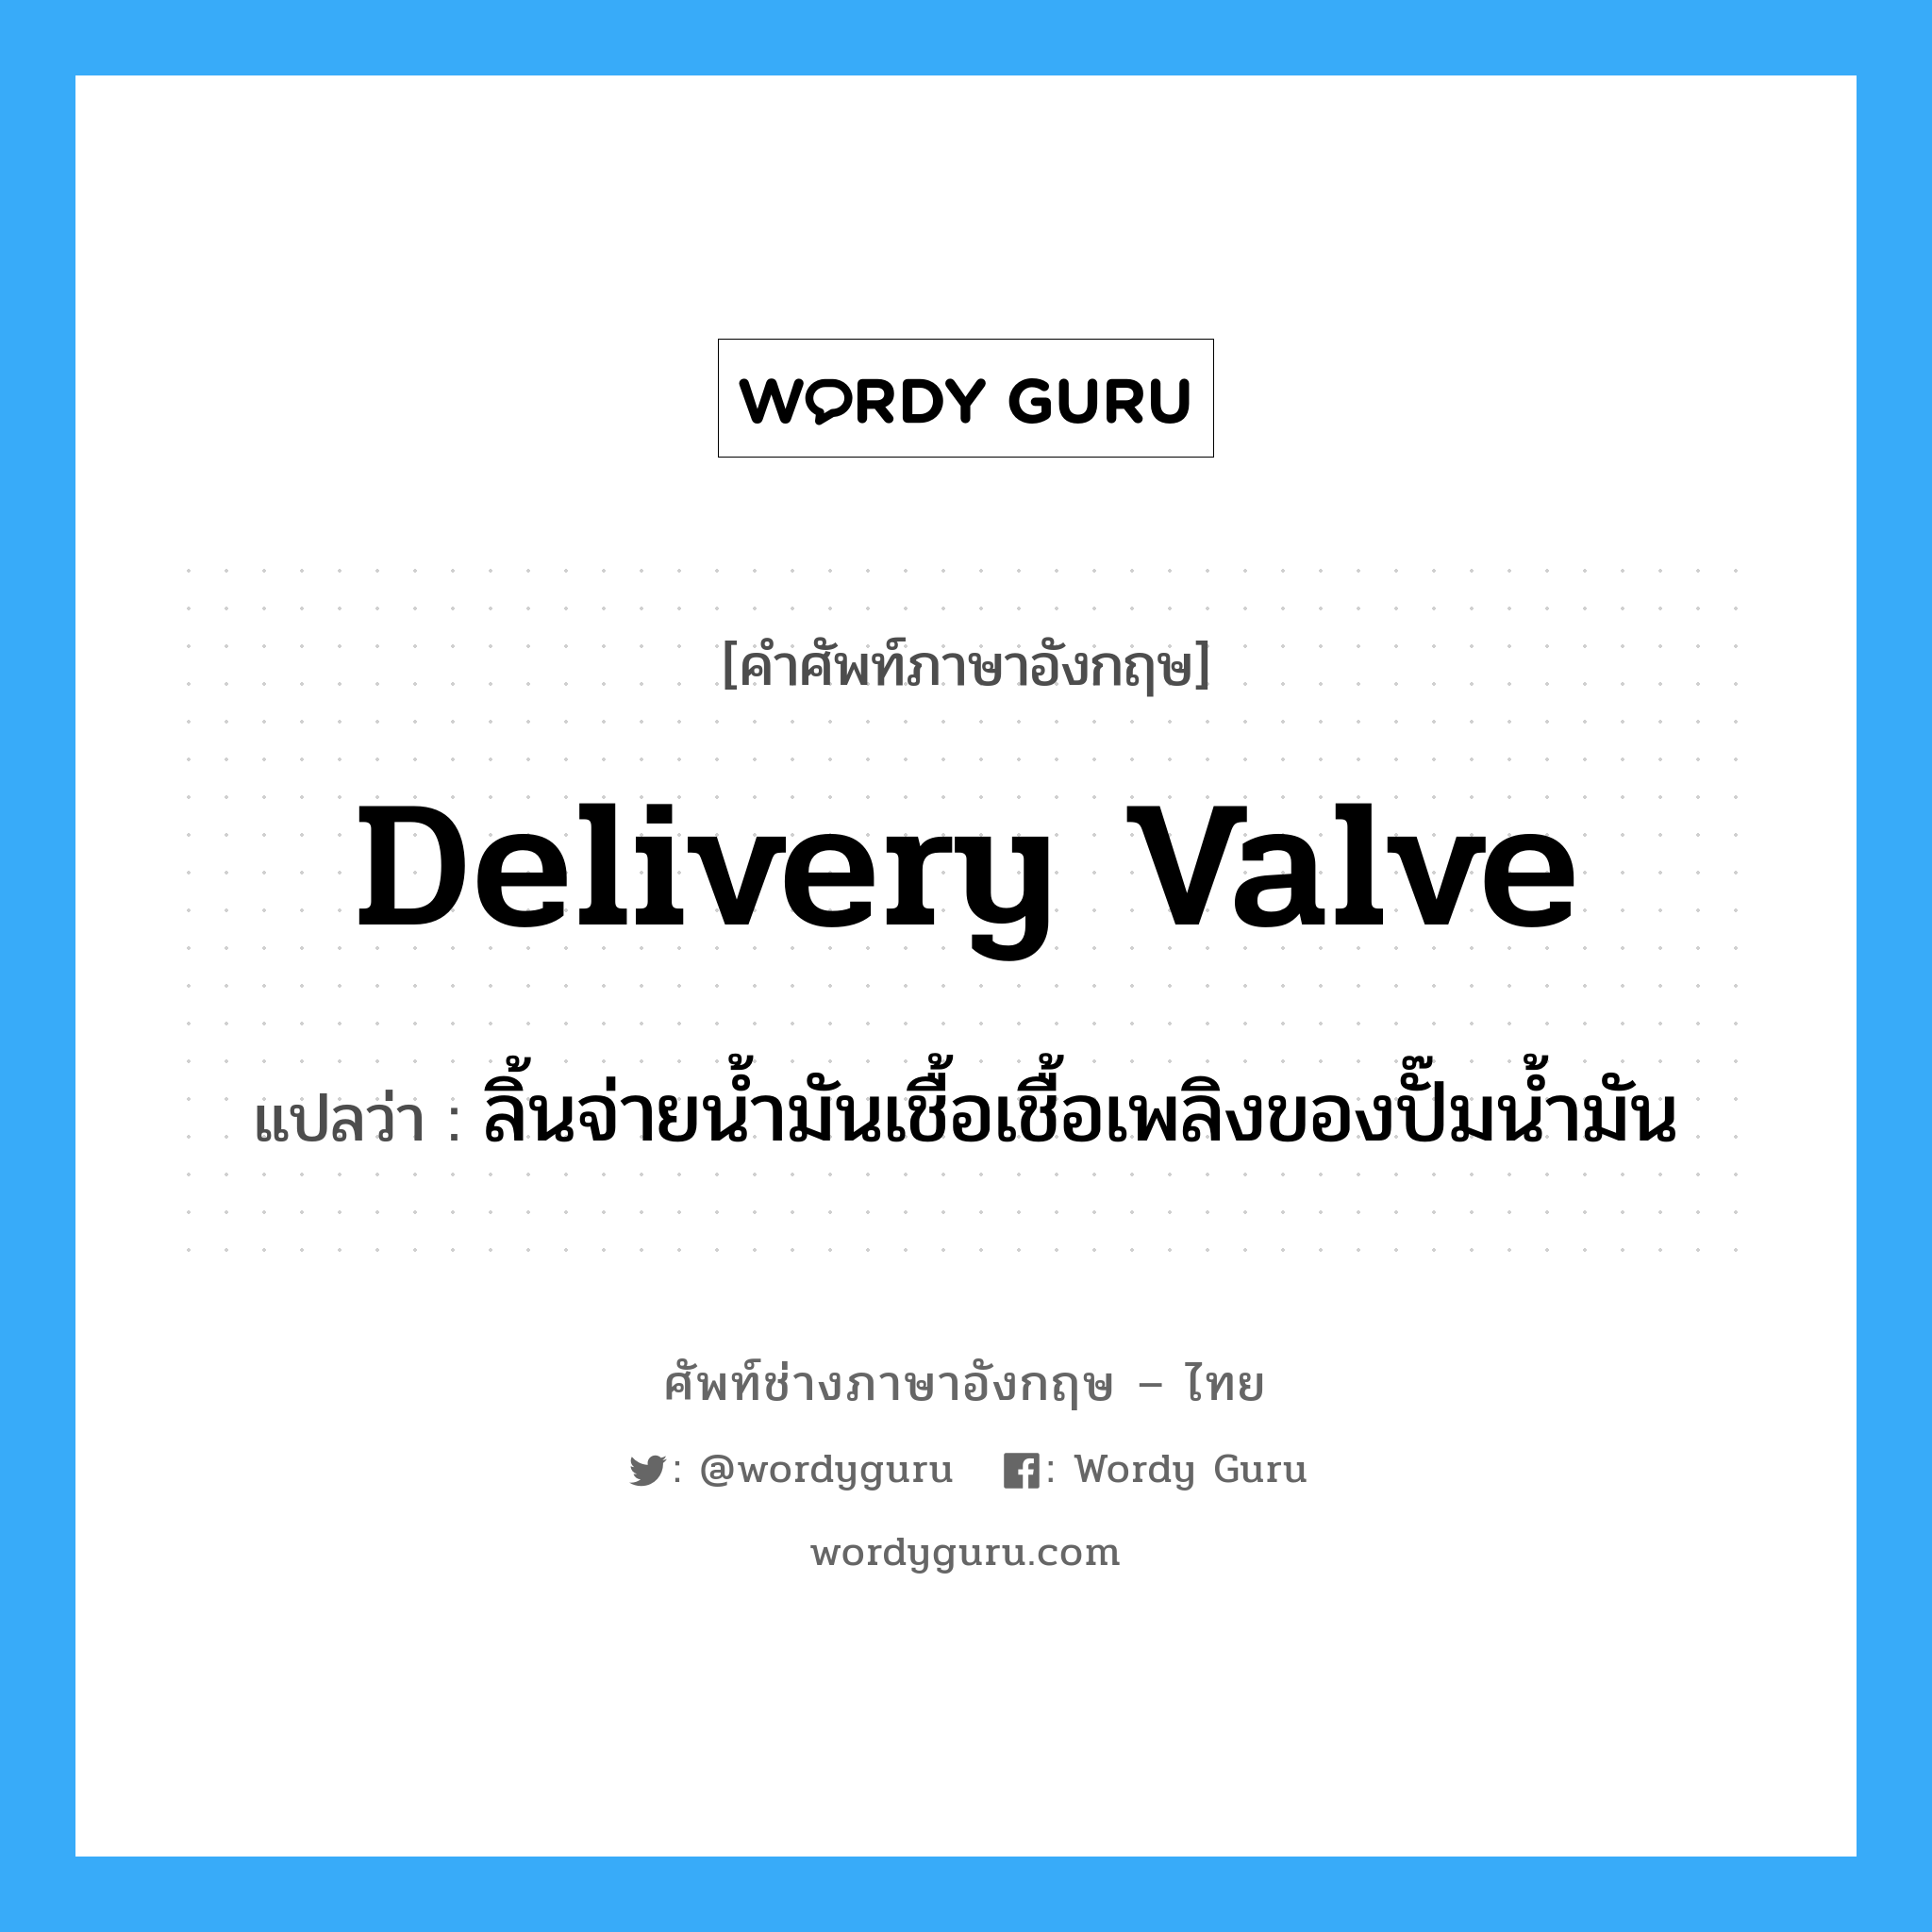 delivery valve แปลว่า?, คำศัพท์ช่างภาษาอังกฤษ - ไทย delivery valve คำศัพท์ภาษาอังกฤษ delivery valve แปลว่า ลิ้นจ่ายน้ำมันเชื้อเชื้อเพลิงของปั๊มน้ำมัน